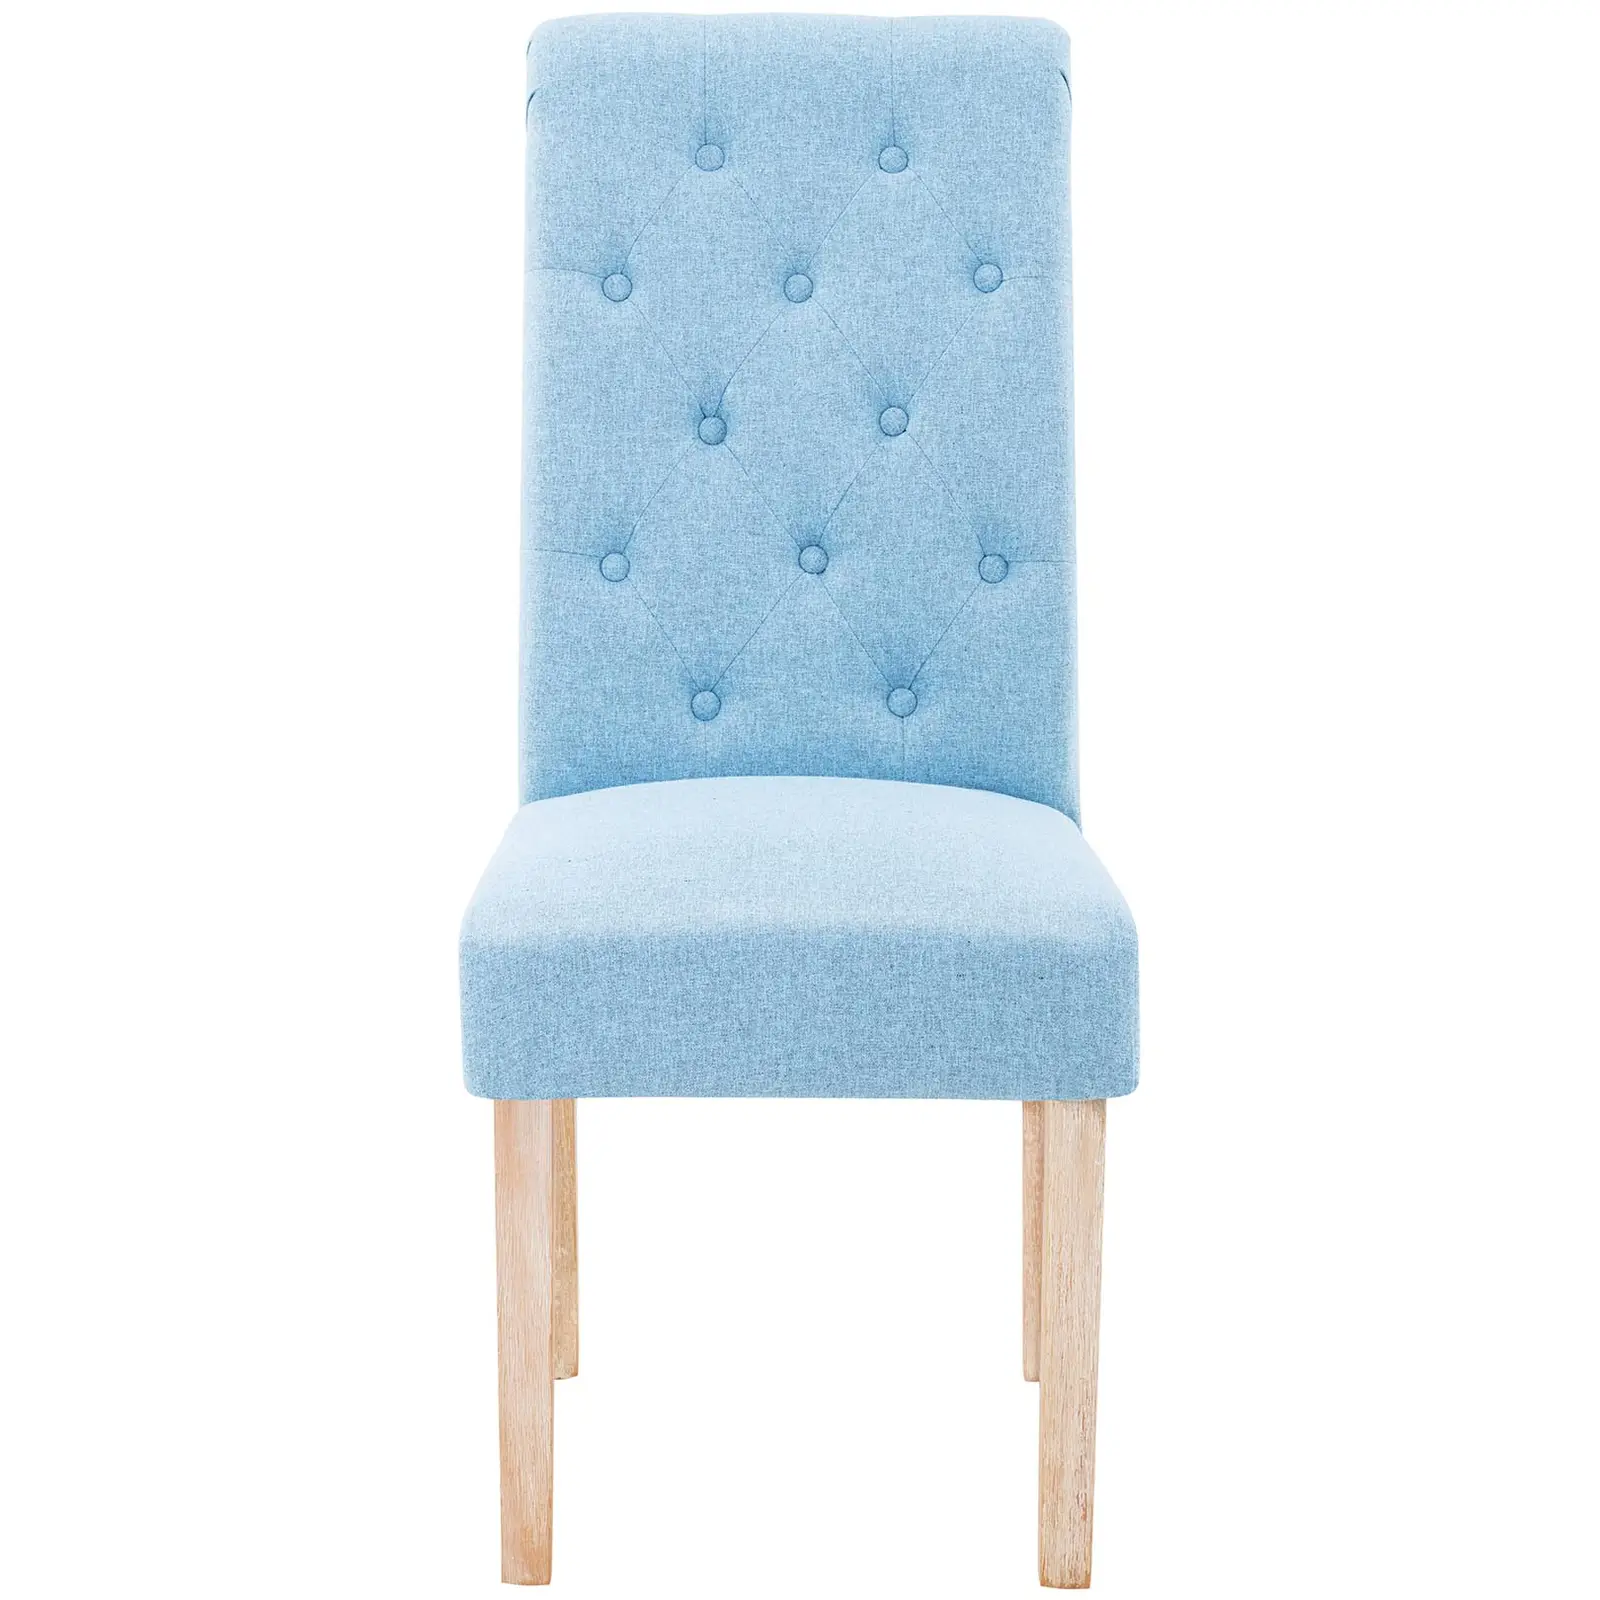 Spisebordsstole - 2 stk. - maks. 180 kg - sæde 46 x 42 cm - himmelblå